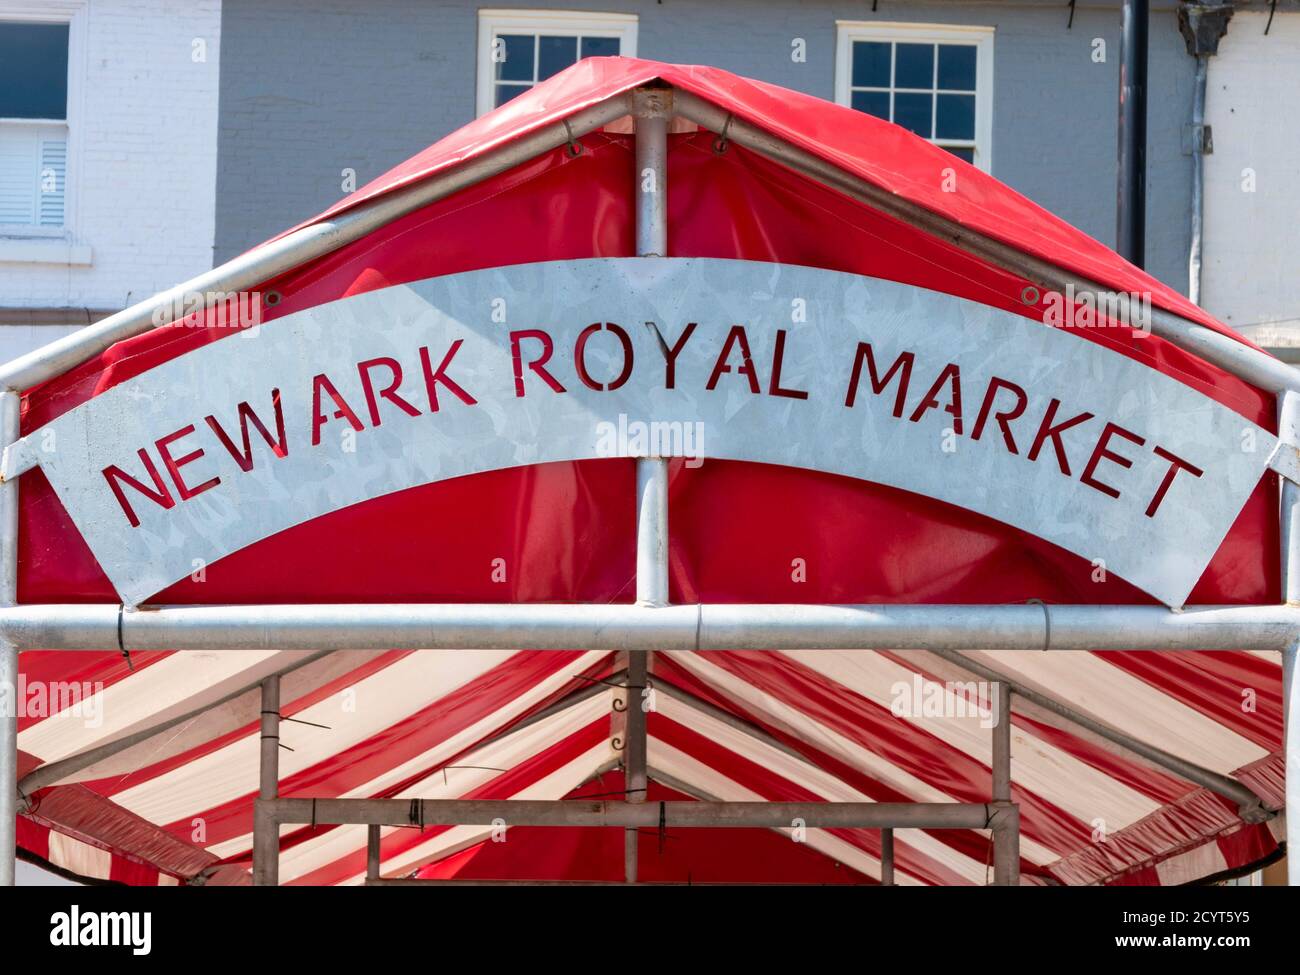 Newark Royal Markt Zeichen auf einem rot-weiß gestreiften Markise im Market Place Newark-on-Trent Nottinghamshire UK GB Europa Stockfoto